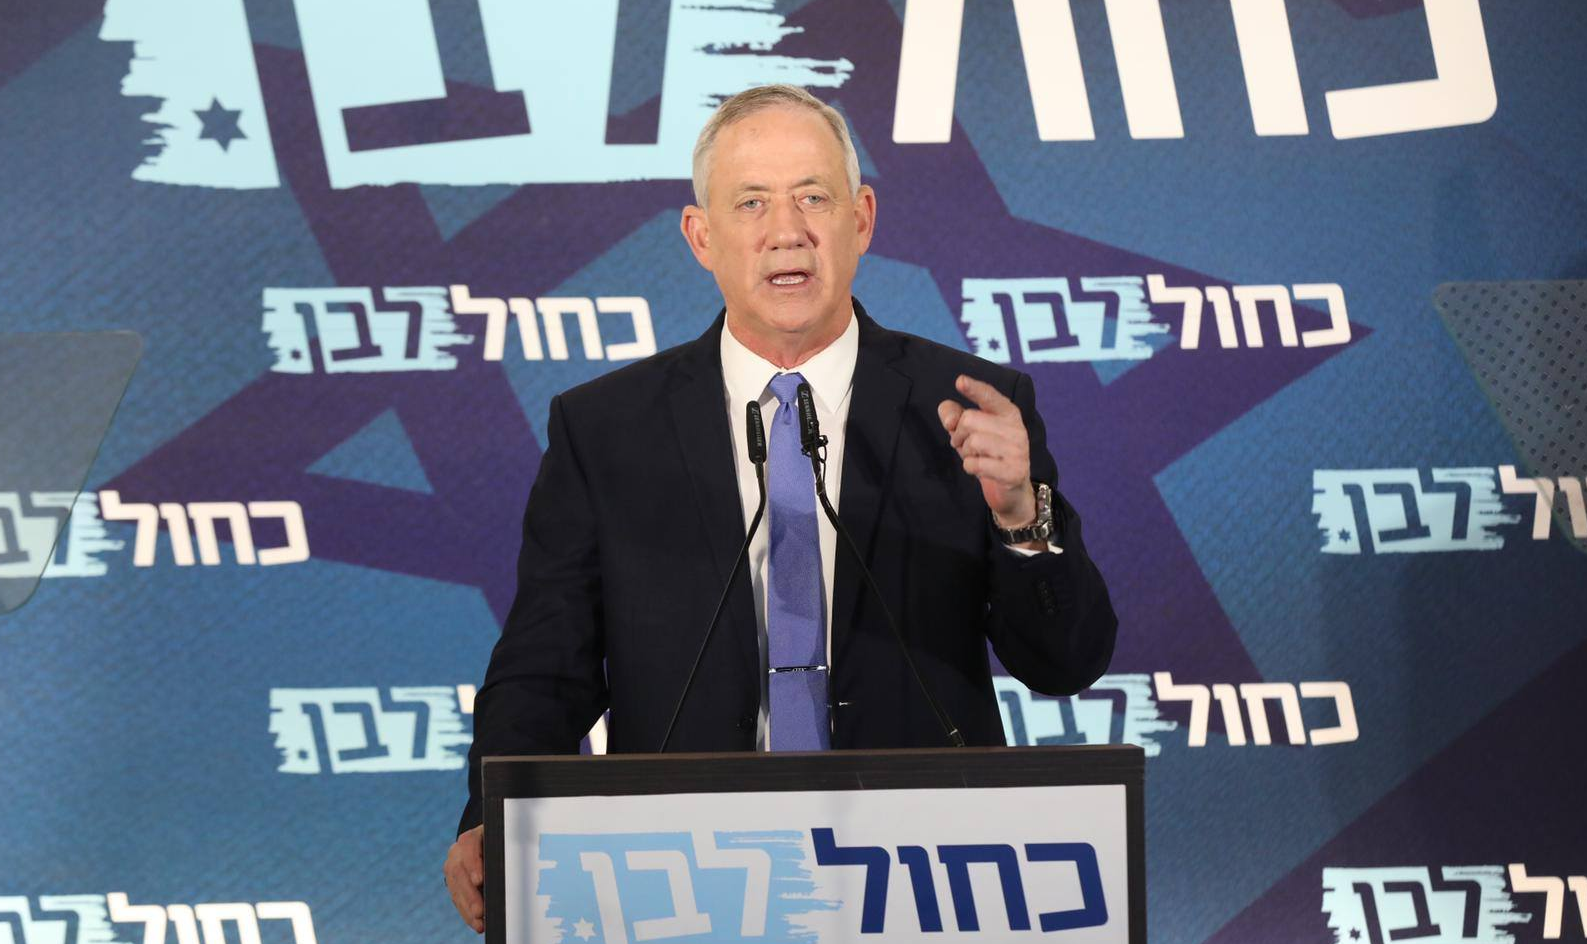 Líder do Azul e Branco teve 28 dias para conseguir formar coalizão, mas não obteve maioria; Knesset deve indicar outro nome para tentar montar governo